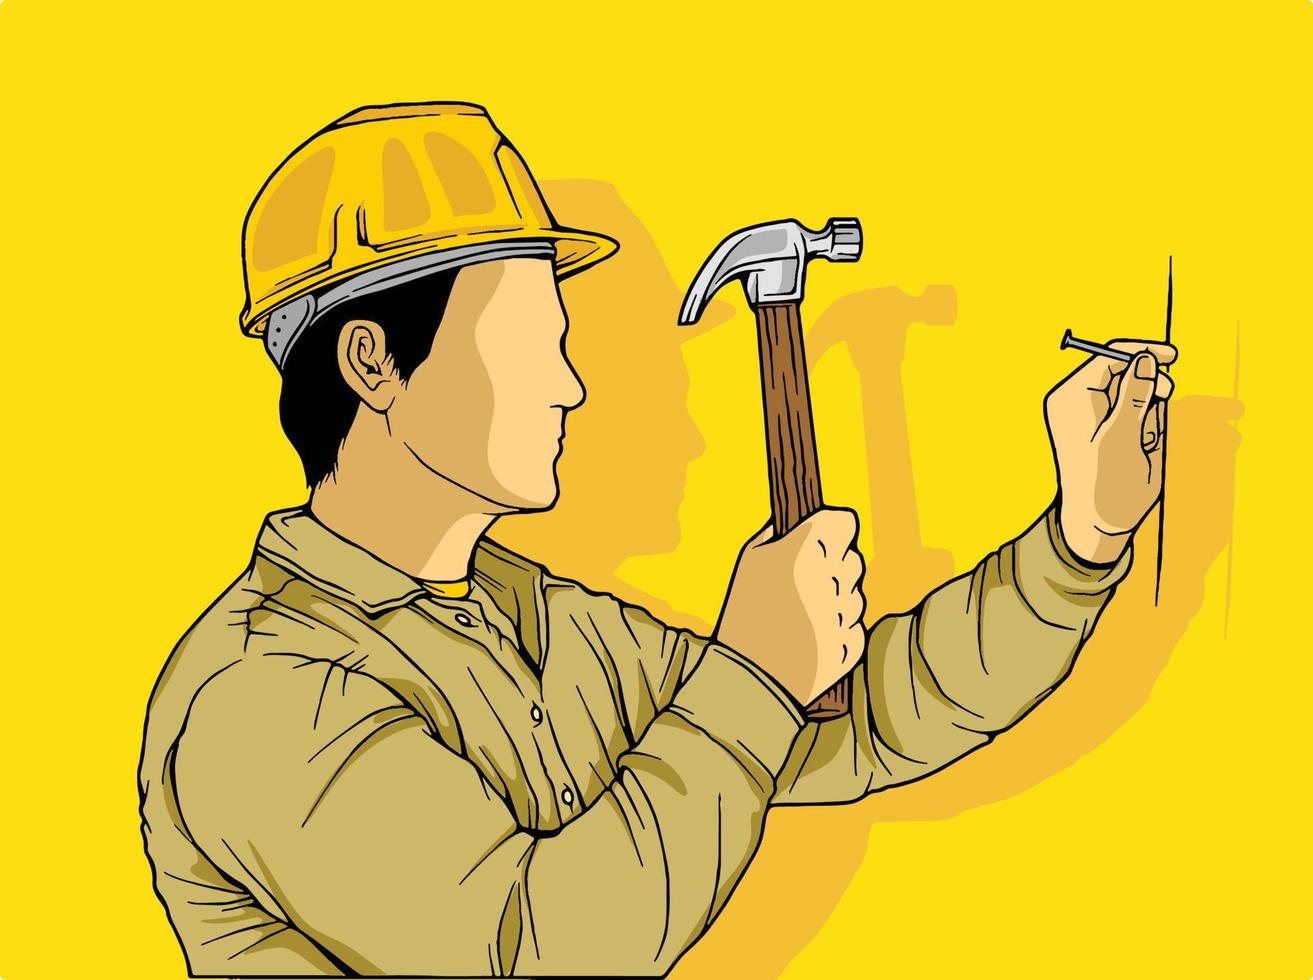 Strichzeichnungen handgezeichnete Illustration eines Bauarbeiters und Architekten, Mechanikers und Ingenieurs und Industriearbeiters in Uniform. projektleiter und mitarbeiter im helm, isoliert vektor